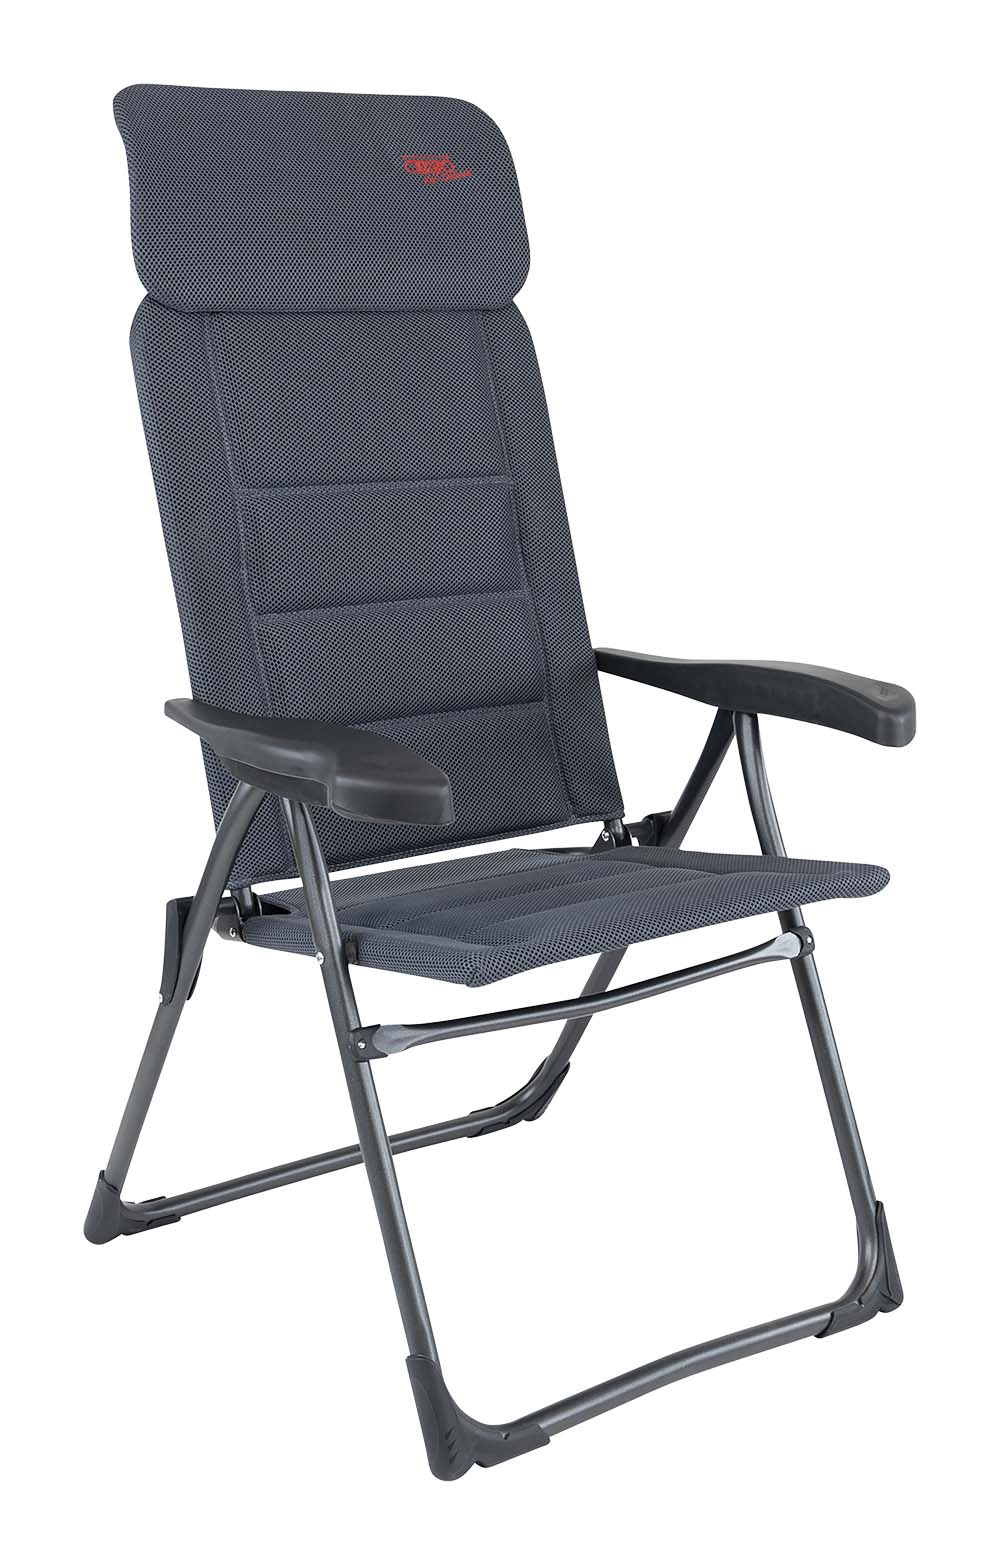 1148013 Crespo - Chair - AP-213 - Air-Deluxe - Compact - Grey